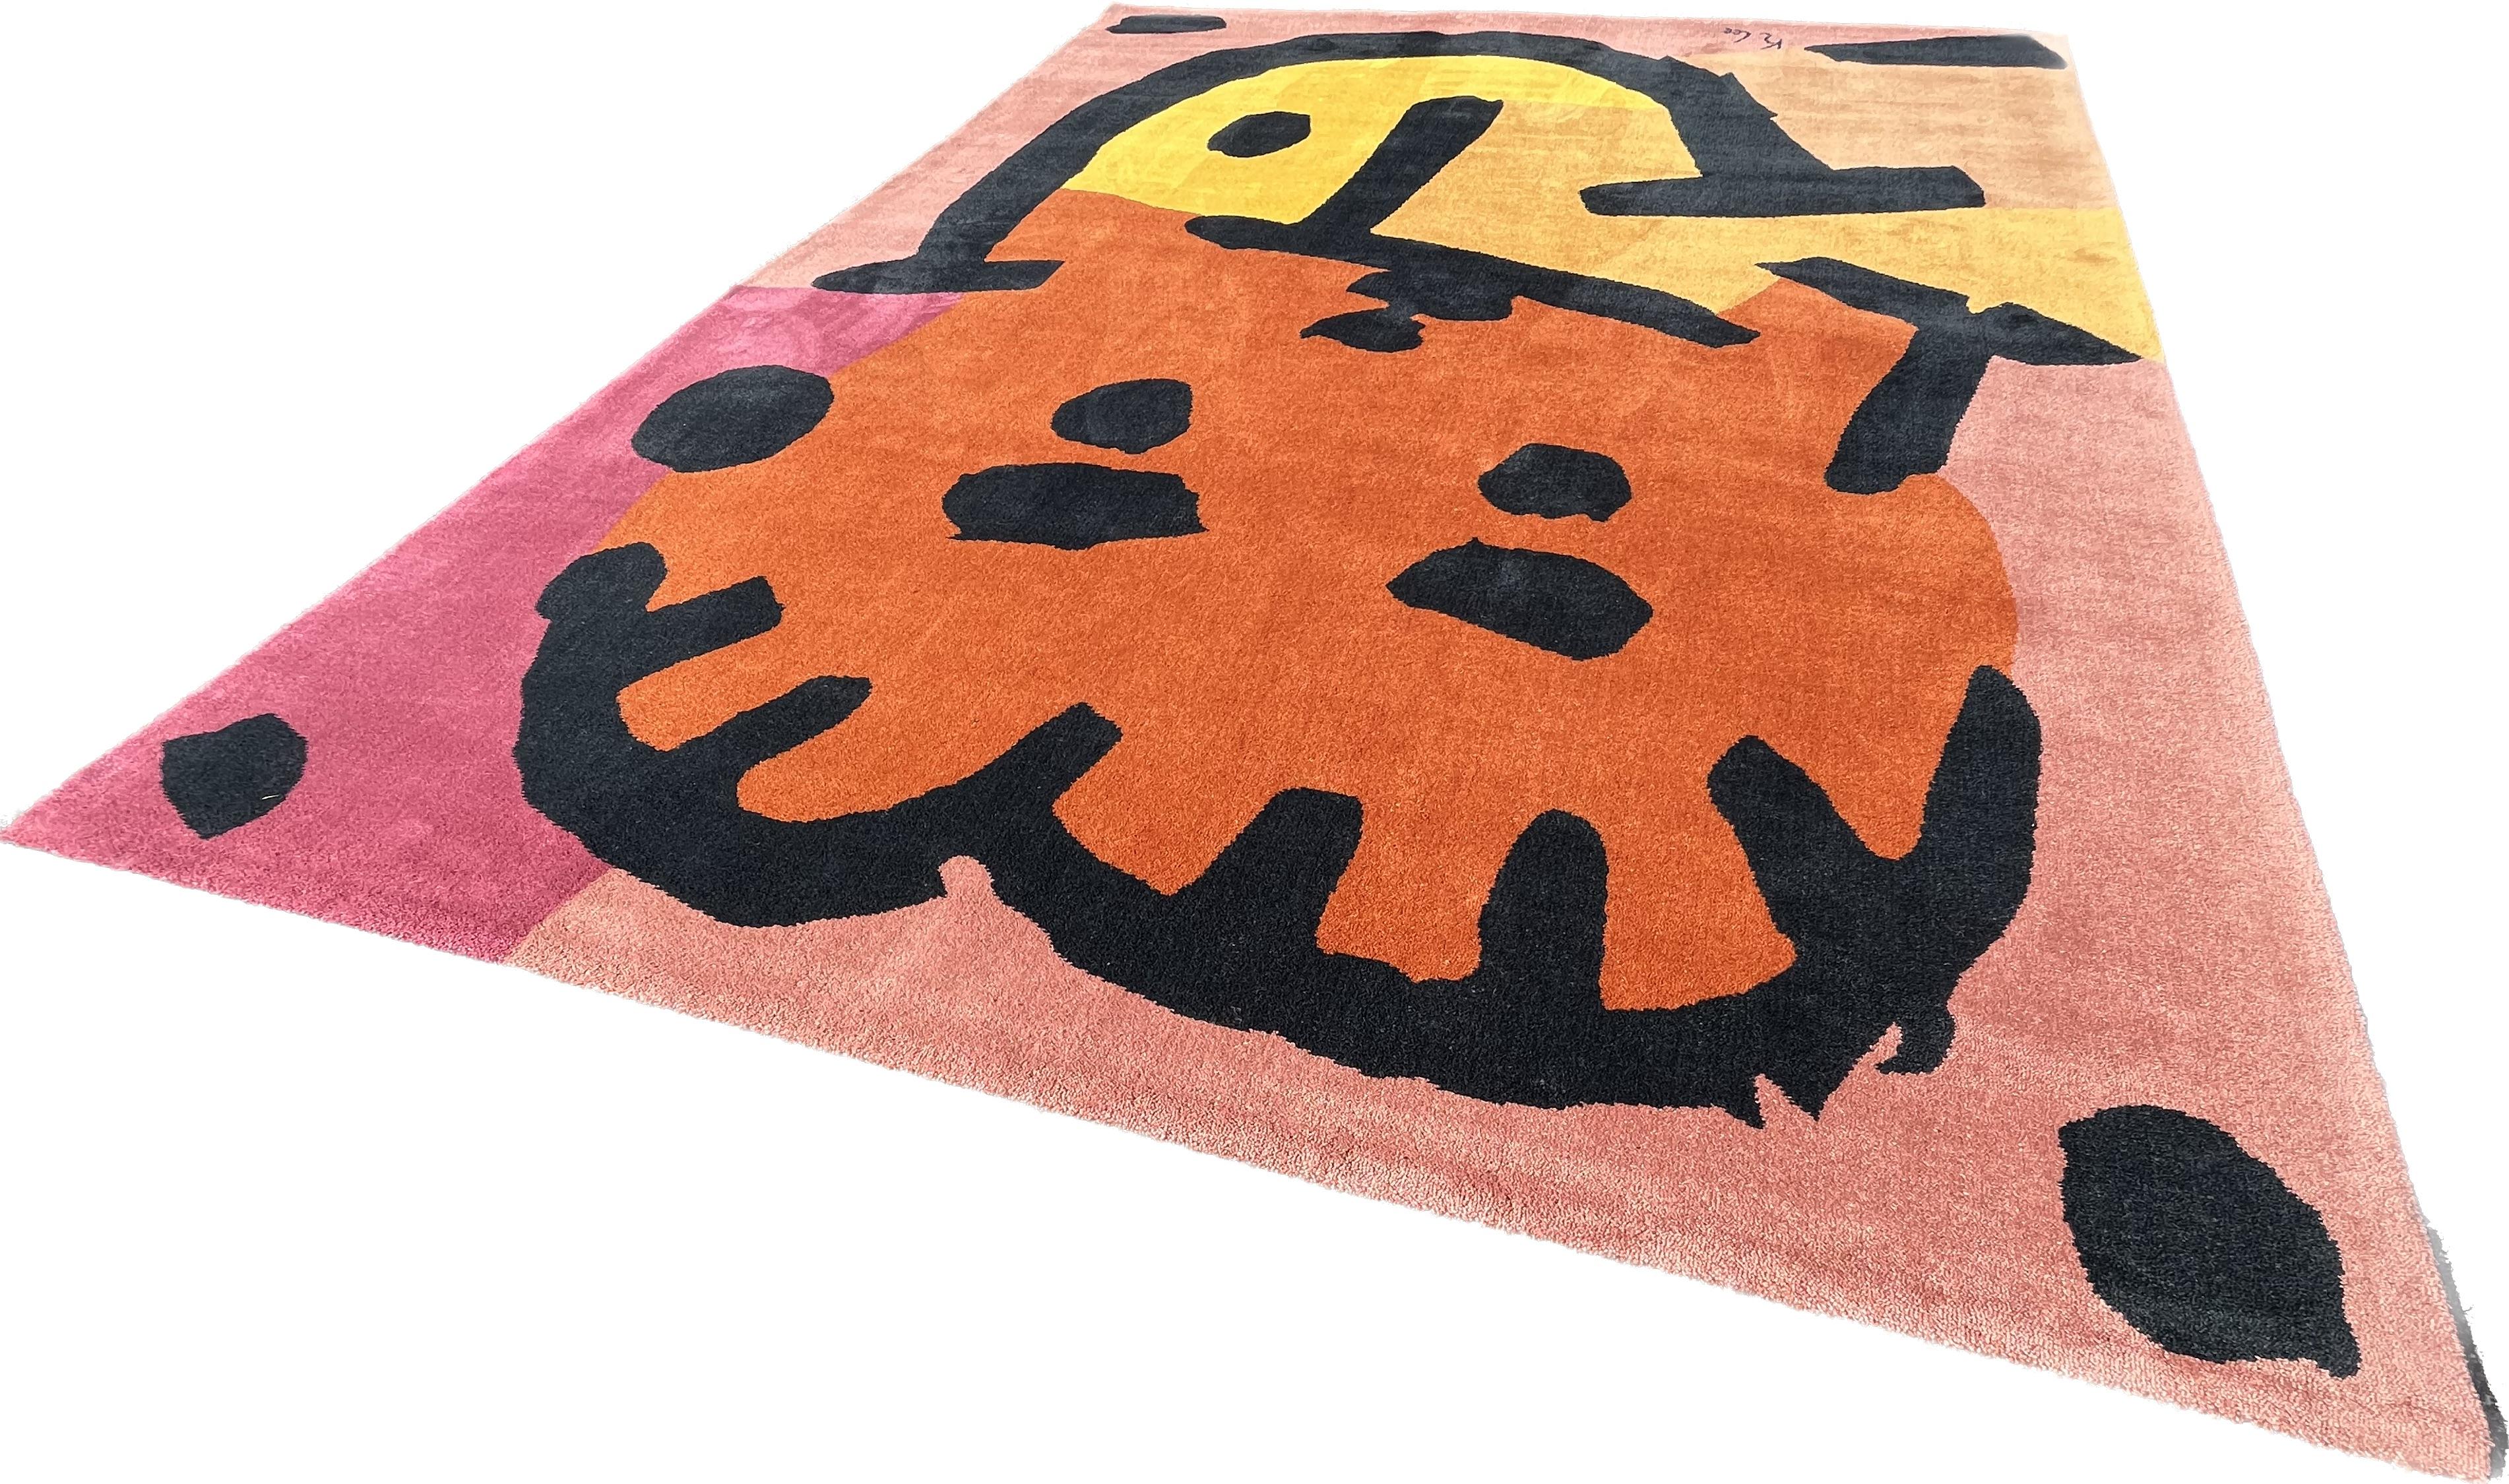 Scandinavian Modern Contemporary Carpet, After the Artist Paul Klee 